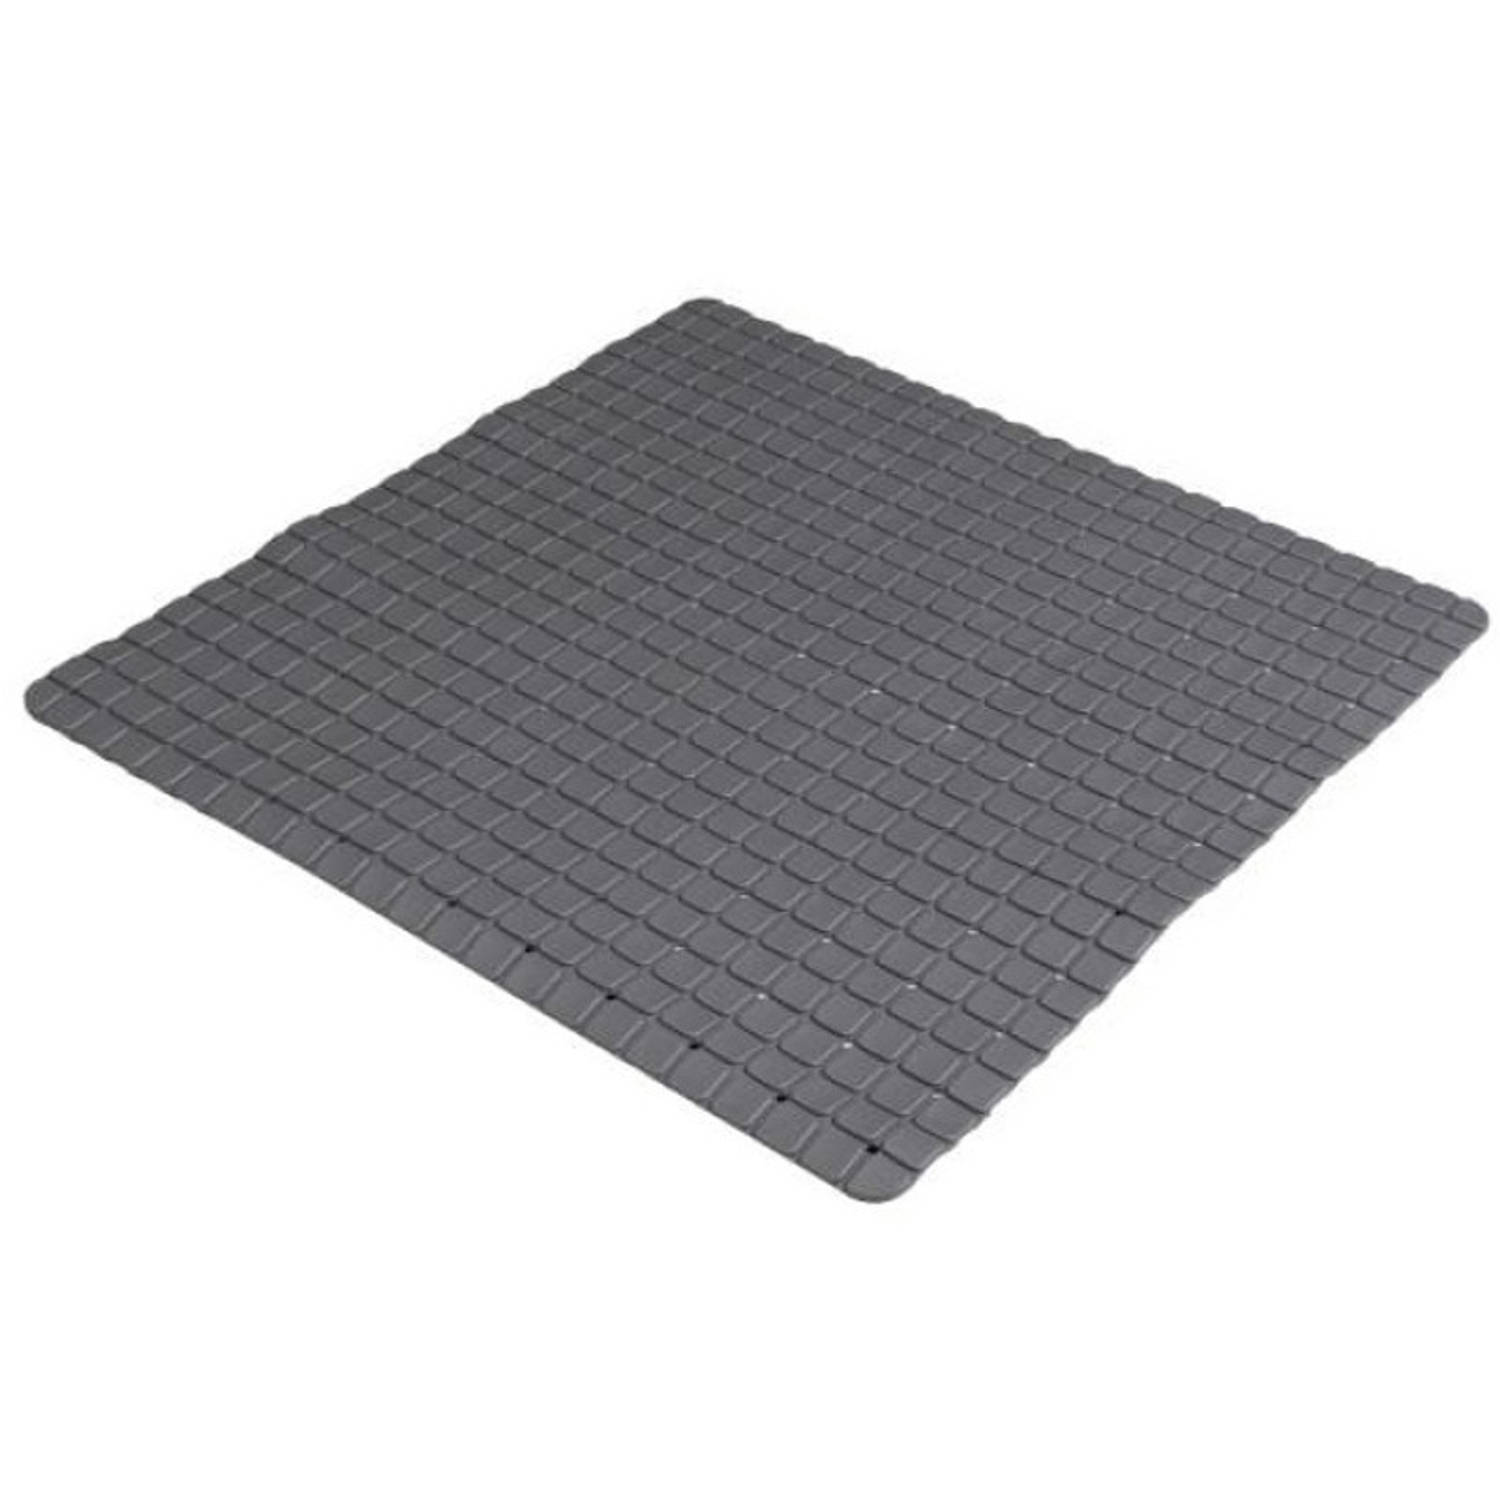 Urban Living Badkamer-douche anti slip mat rubber voor op de vloer antraciet 55 x 55 cm Badmatjes